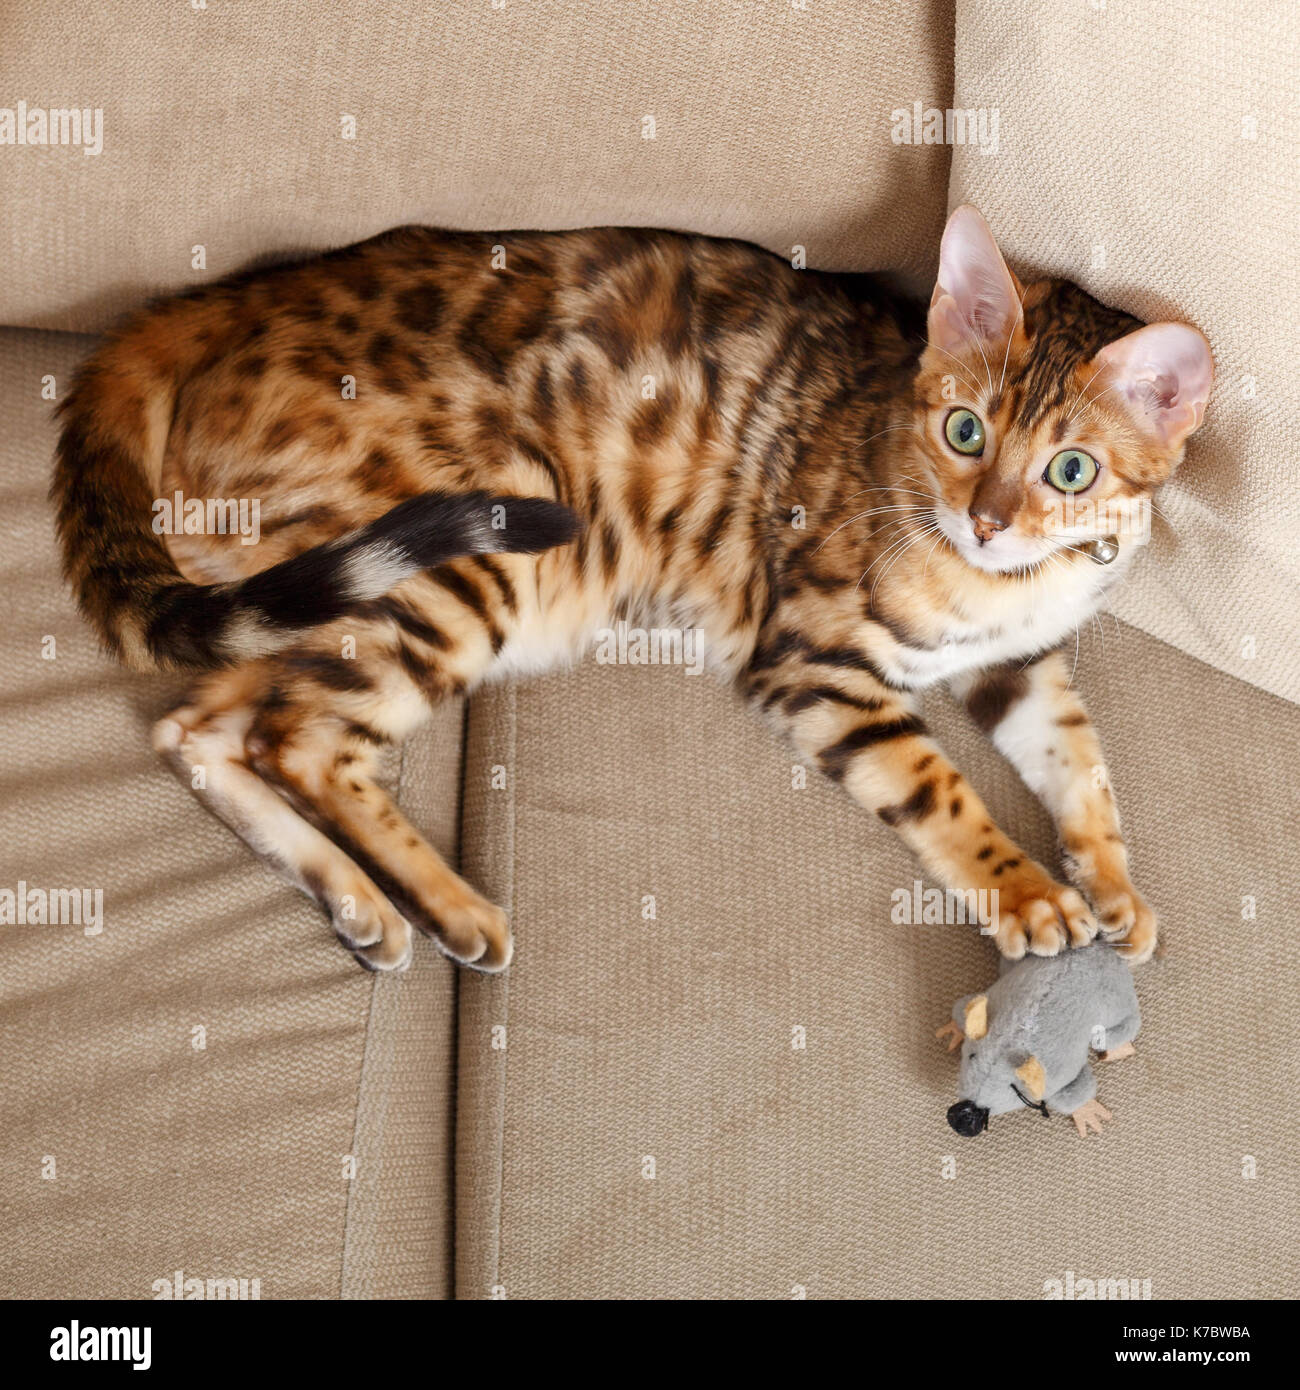 Weibliche Bengalkatze Kitten auf Sofa spielen mit einem Spielzeug maus Model Release: Nein Property Release: Ja (CAT). Stockfoto